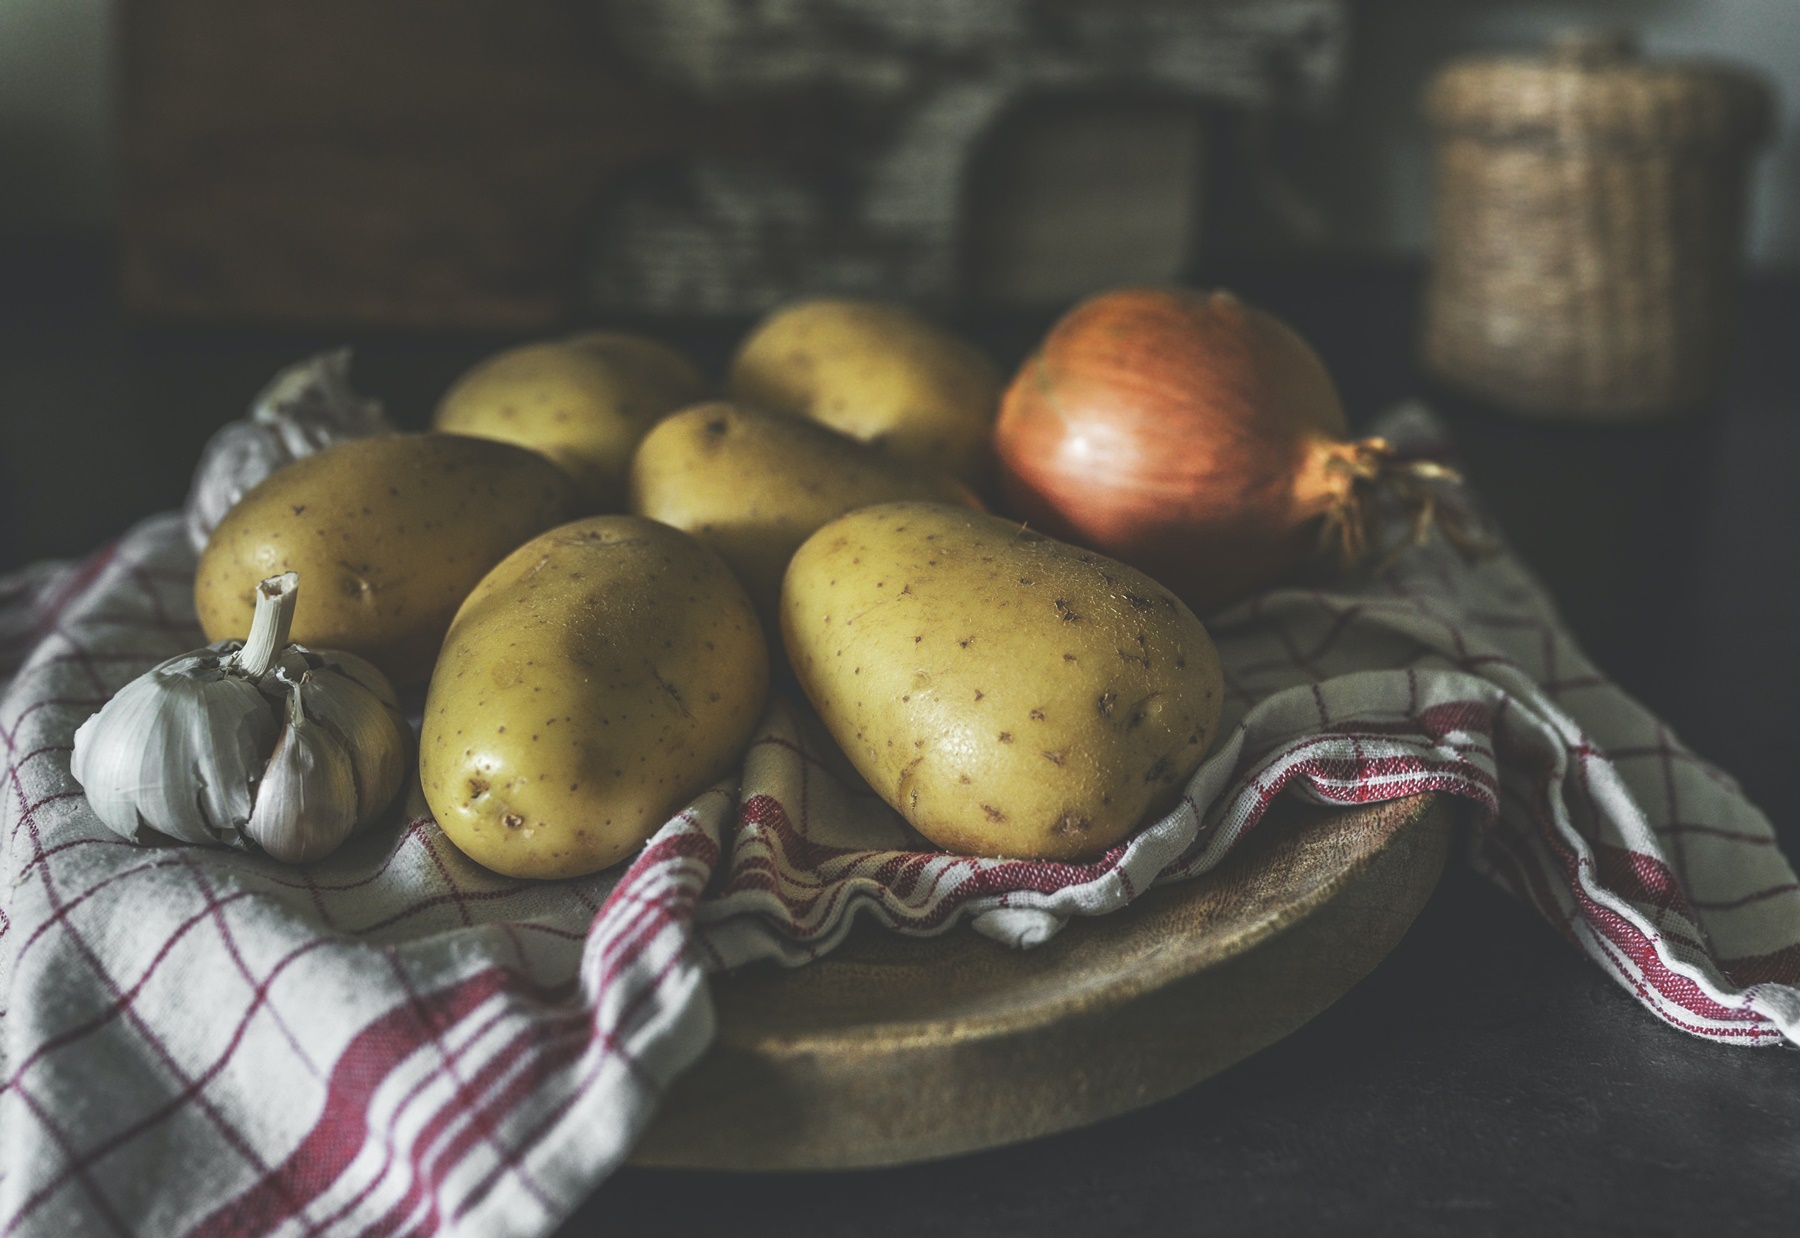 Λαχανικά στον ατμό χωρίς ατμομάγειρα: Πώς θα τα μαγειρέψετε για να μη “χαλάσουν”